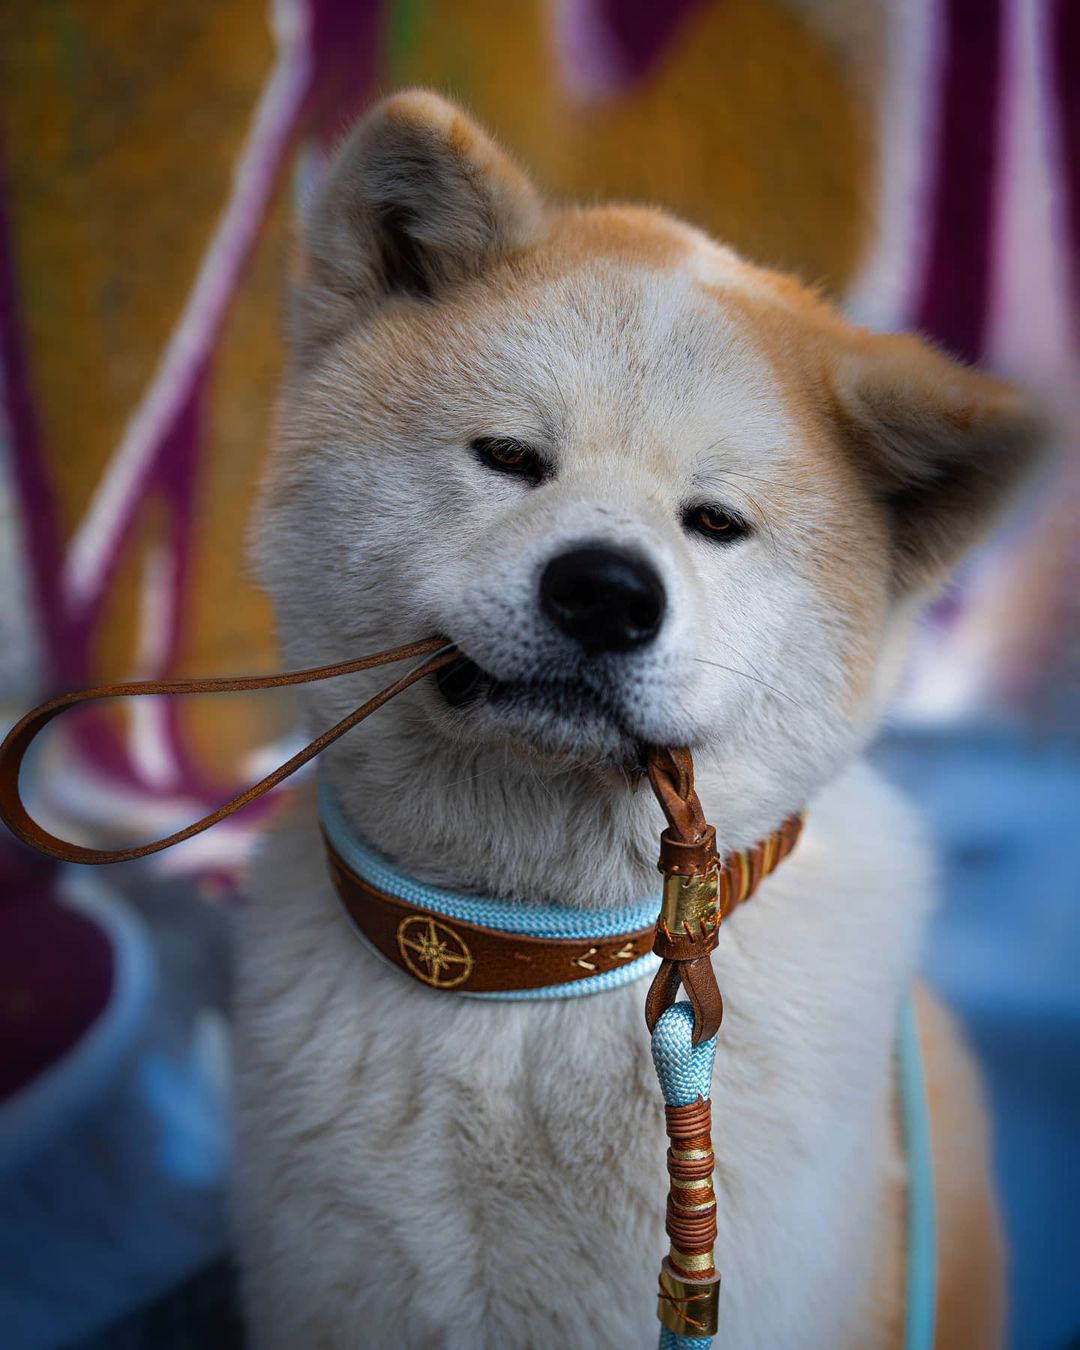 Huấn luyện chó Akita có khó không? Làm thế nào để luyện cho họ khả năng nghe?